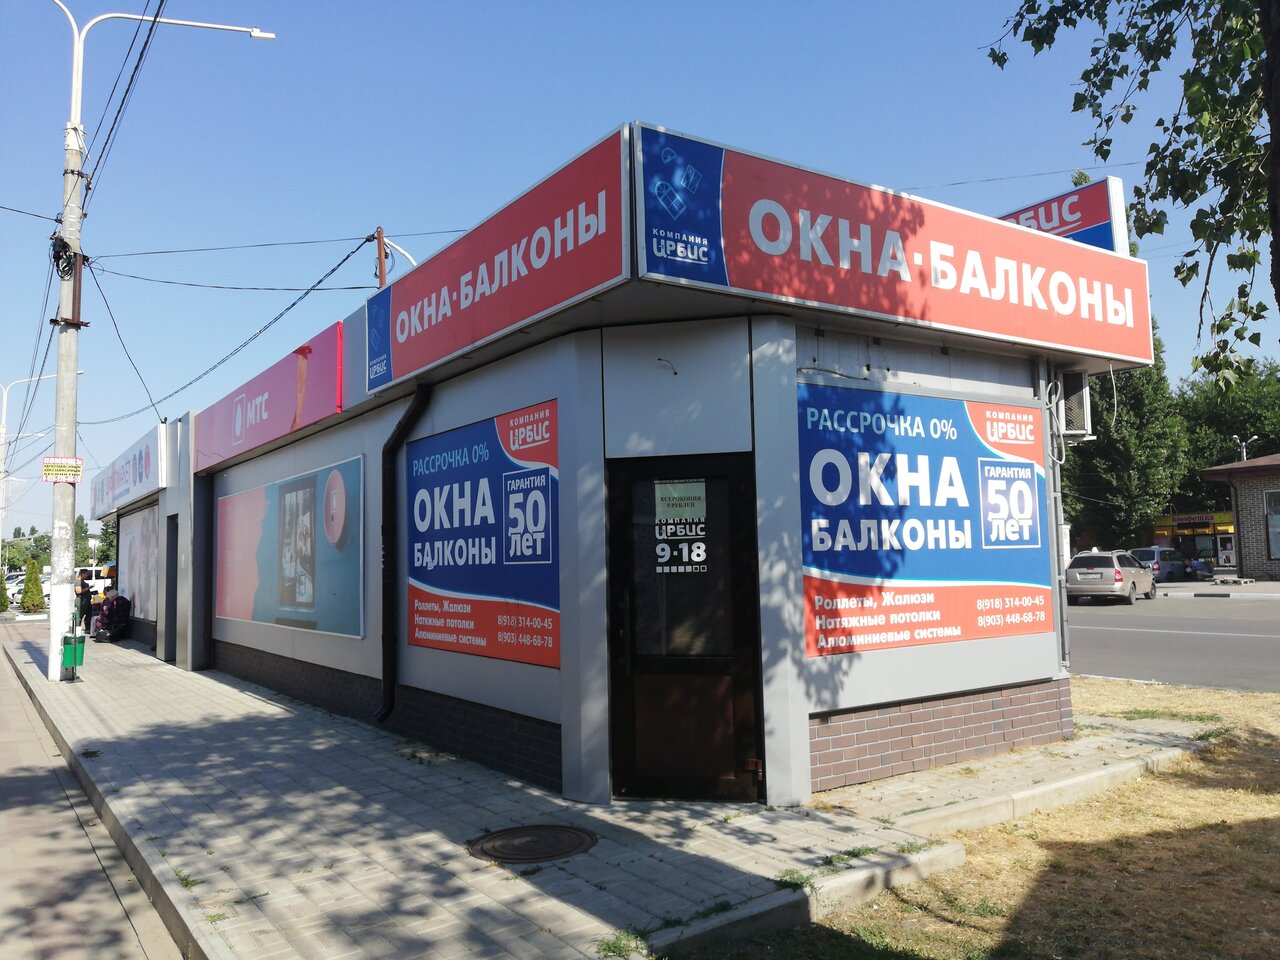 Магазин Мтс В Кропоткине